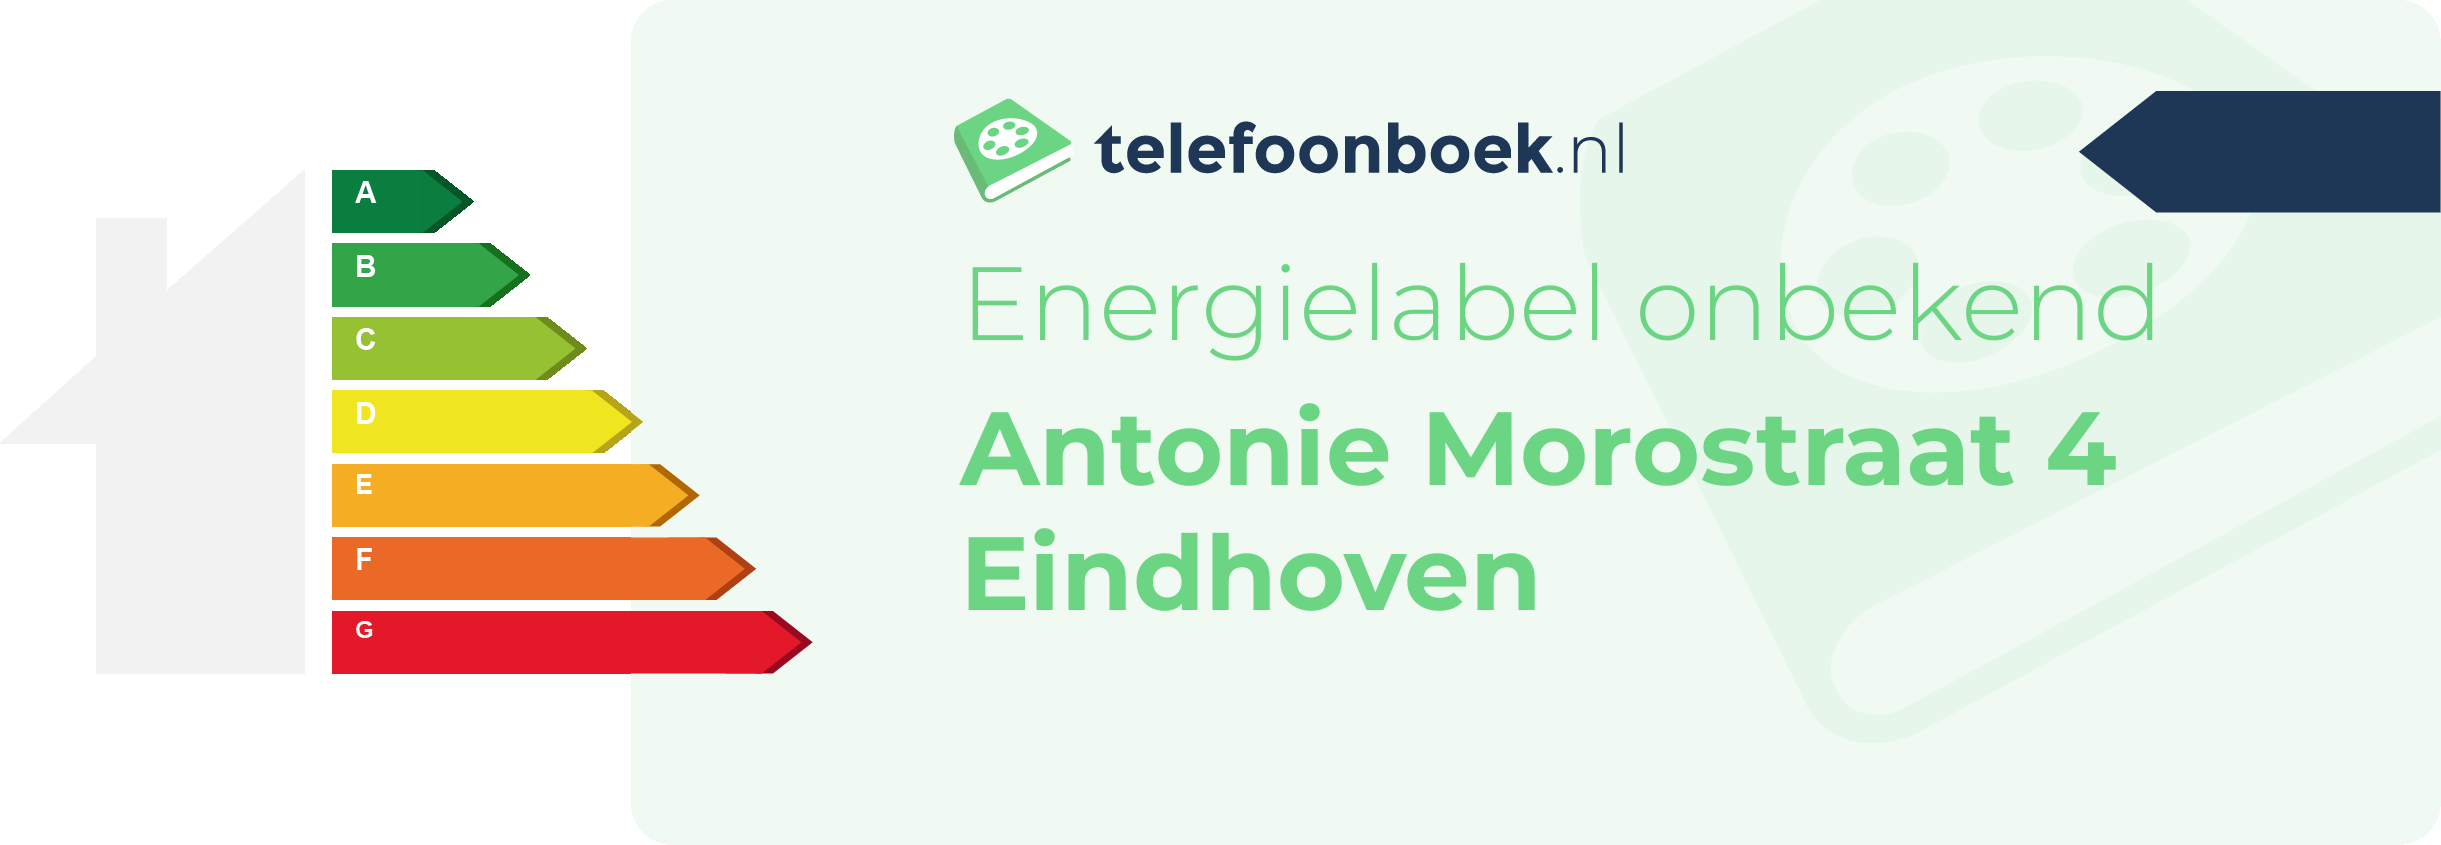 Energielabel Antonie Morostraat 4 Eindhoven